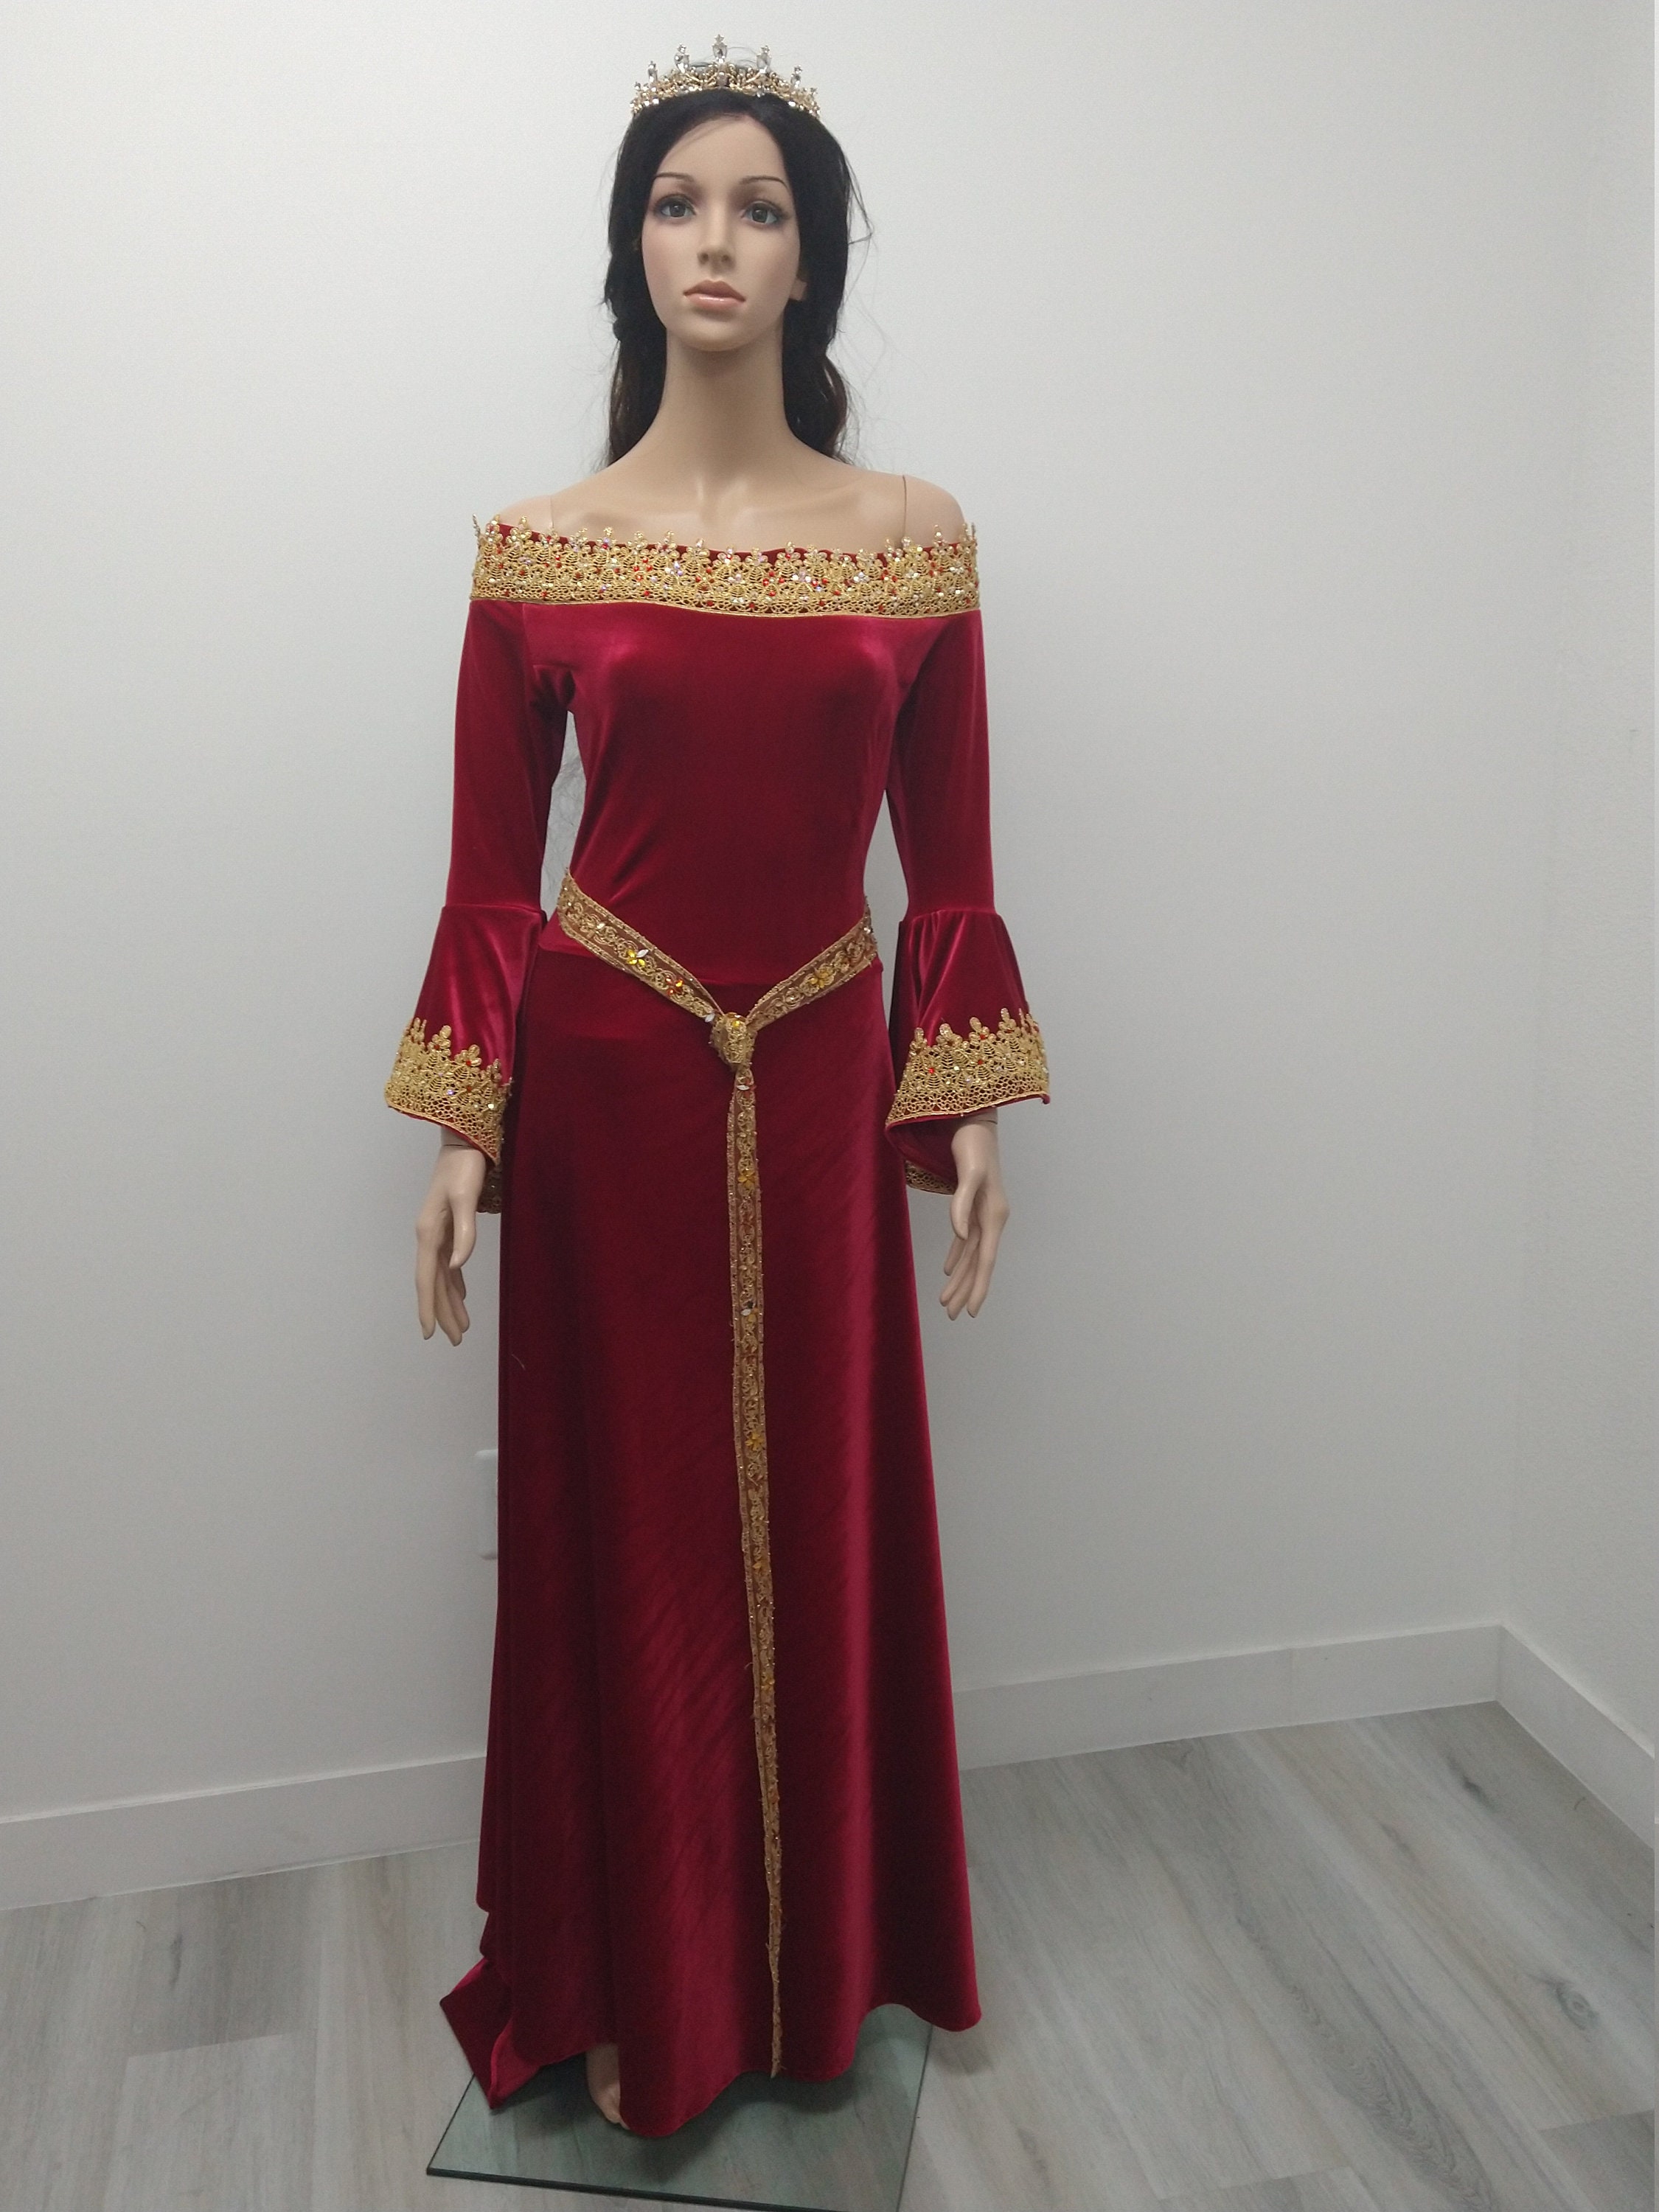 Vestido de reina medieval roja / traje / cosplay -  España